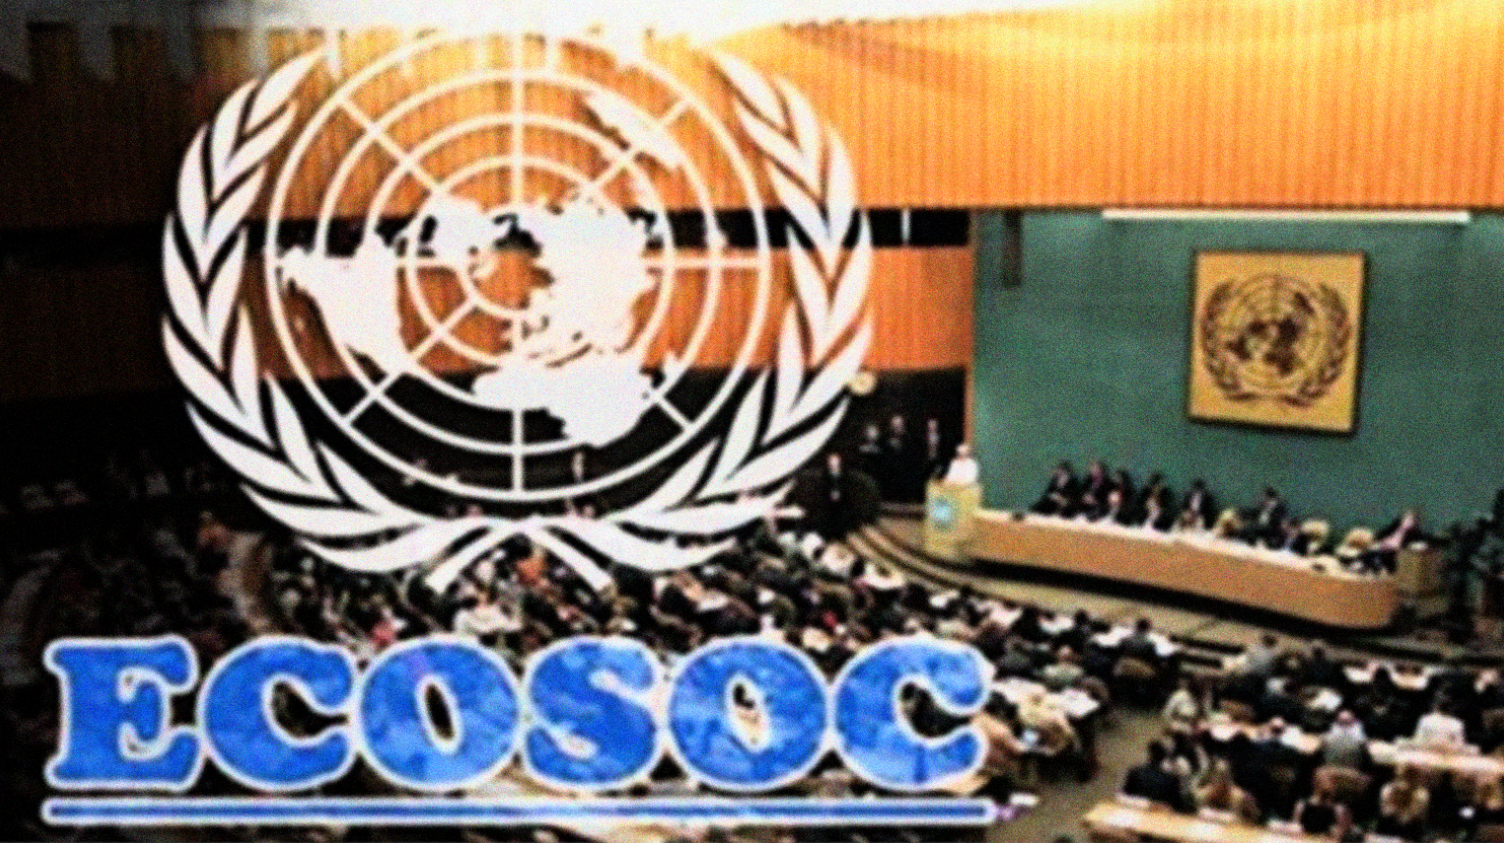 Sidang ECOSOC (Economic and Social Council) PBB. (Foto:UN)